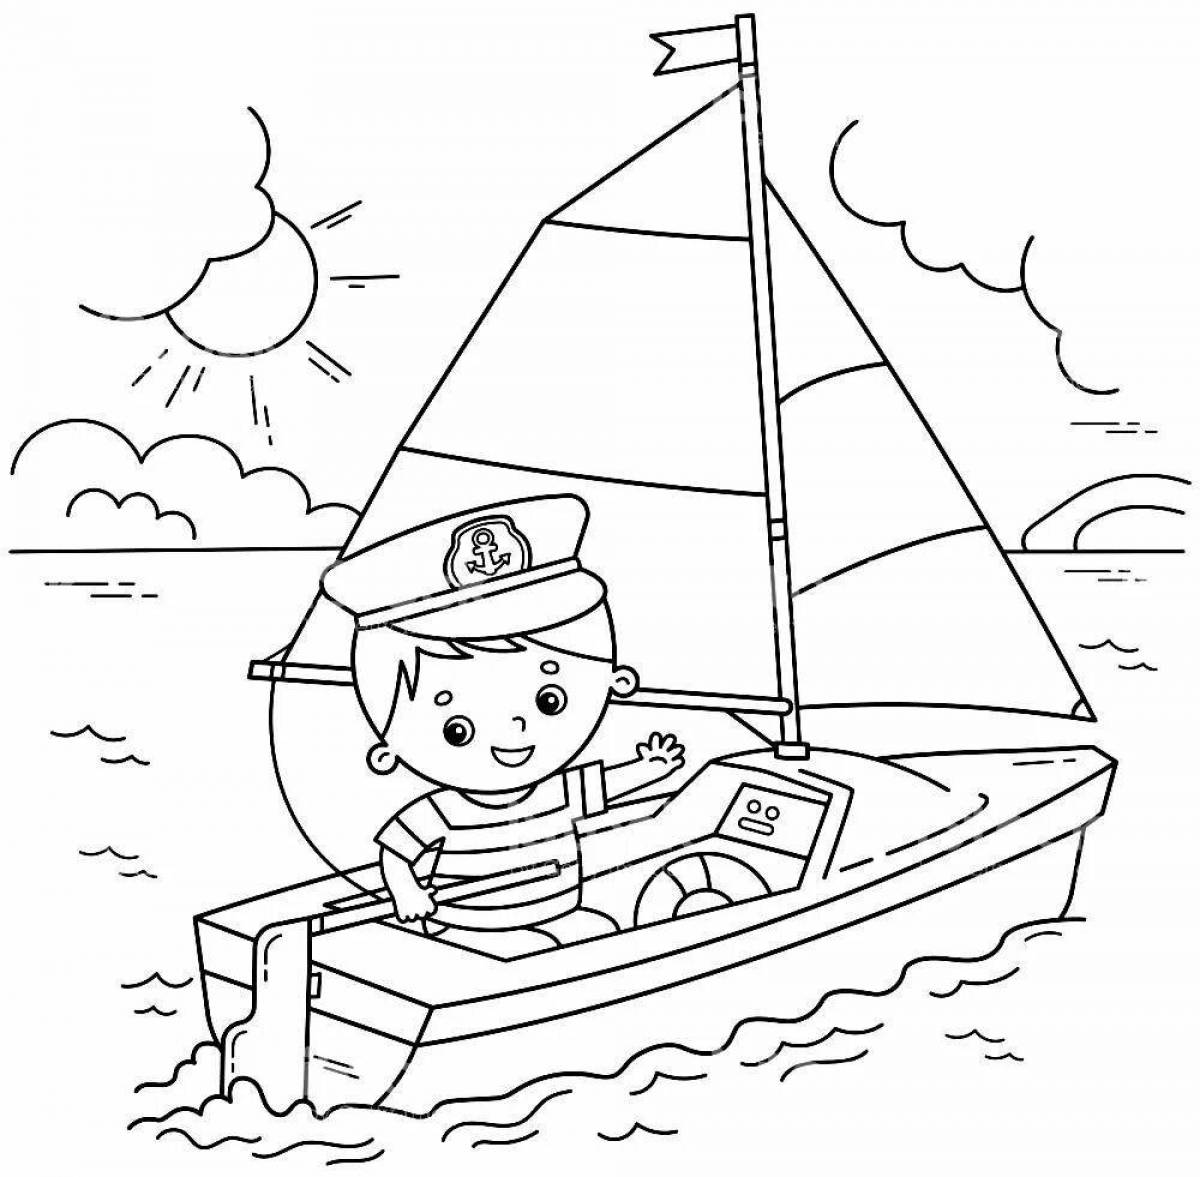 Colorful-sailor-illustration моряк-раскраска для детей